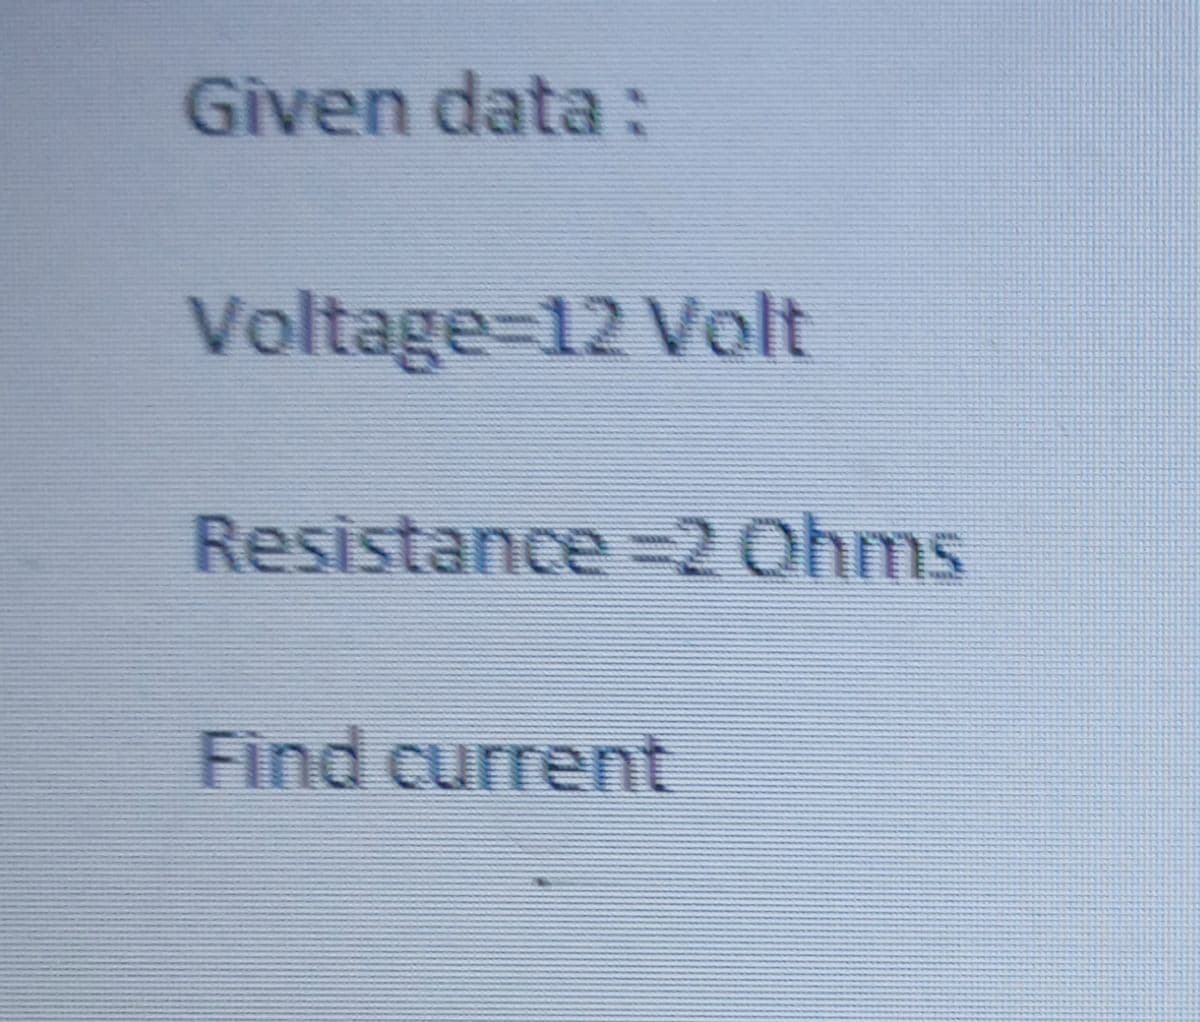 Given data:
Voltage%-D12 Volt
Resistance =2 Ohms
Find current
